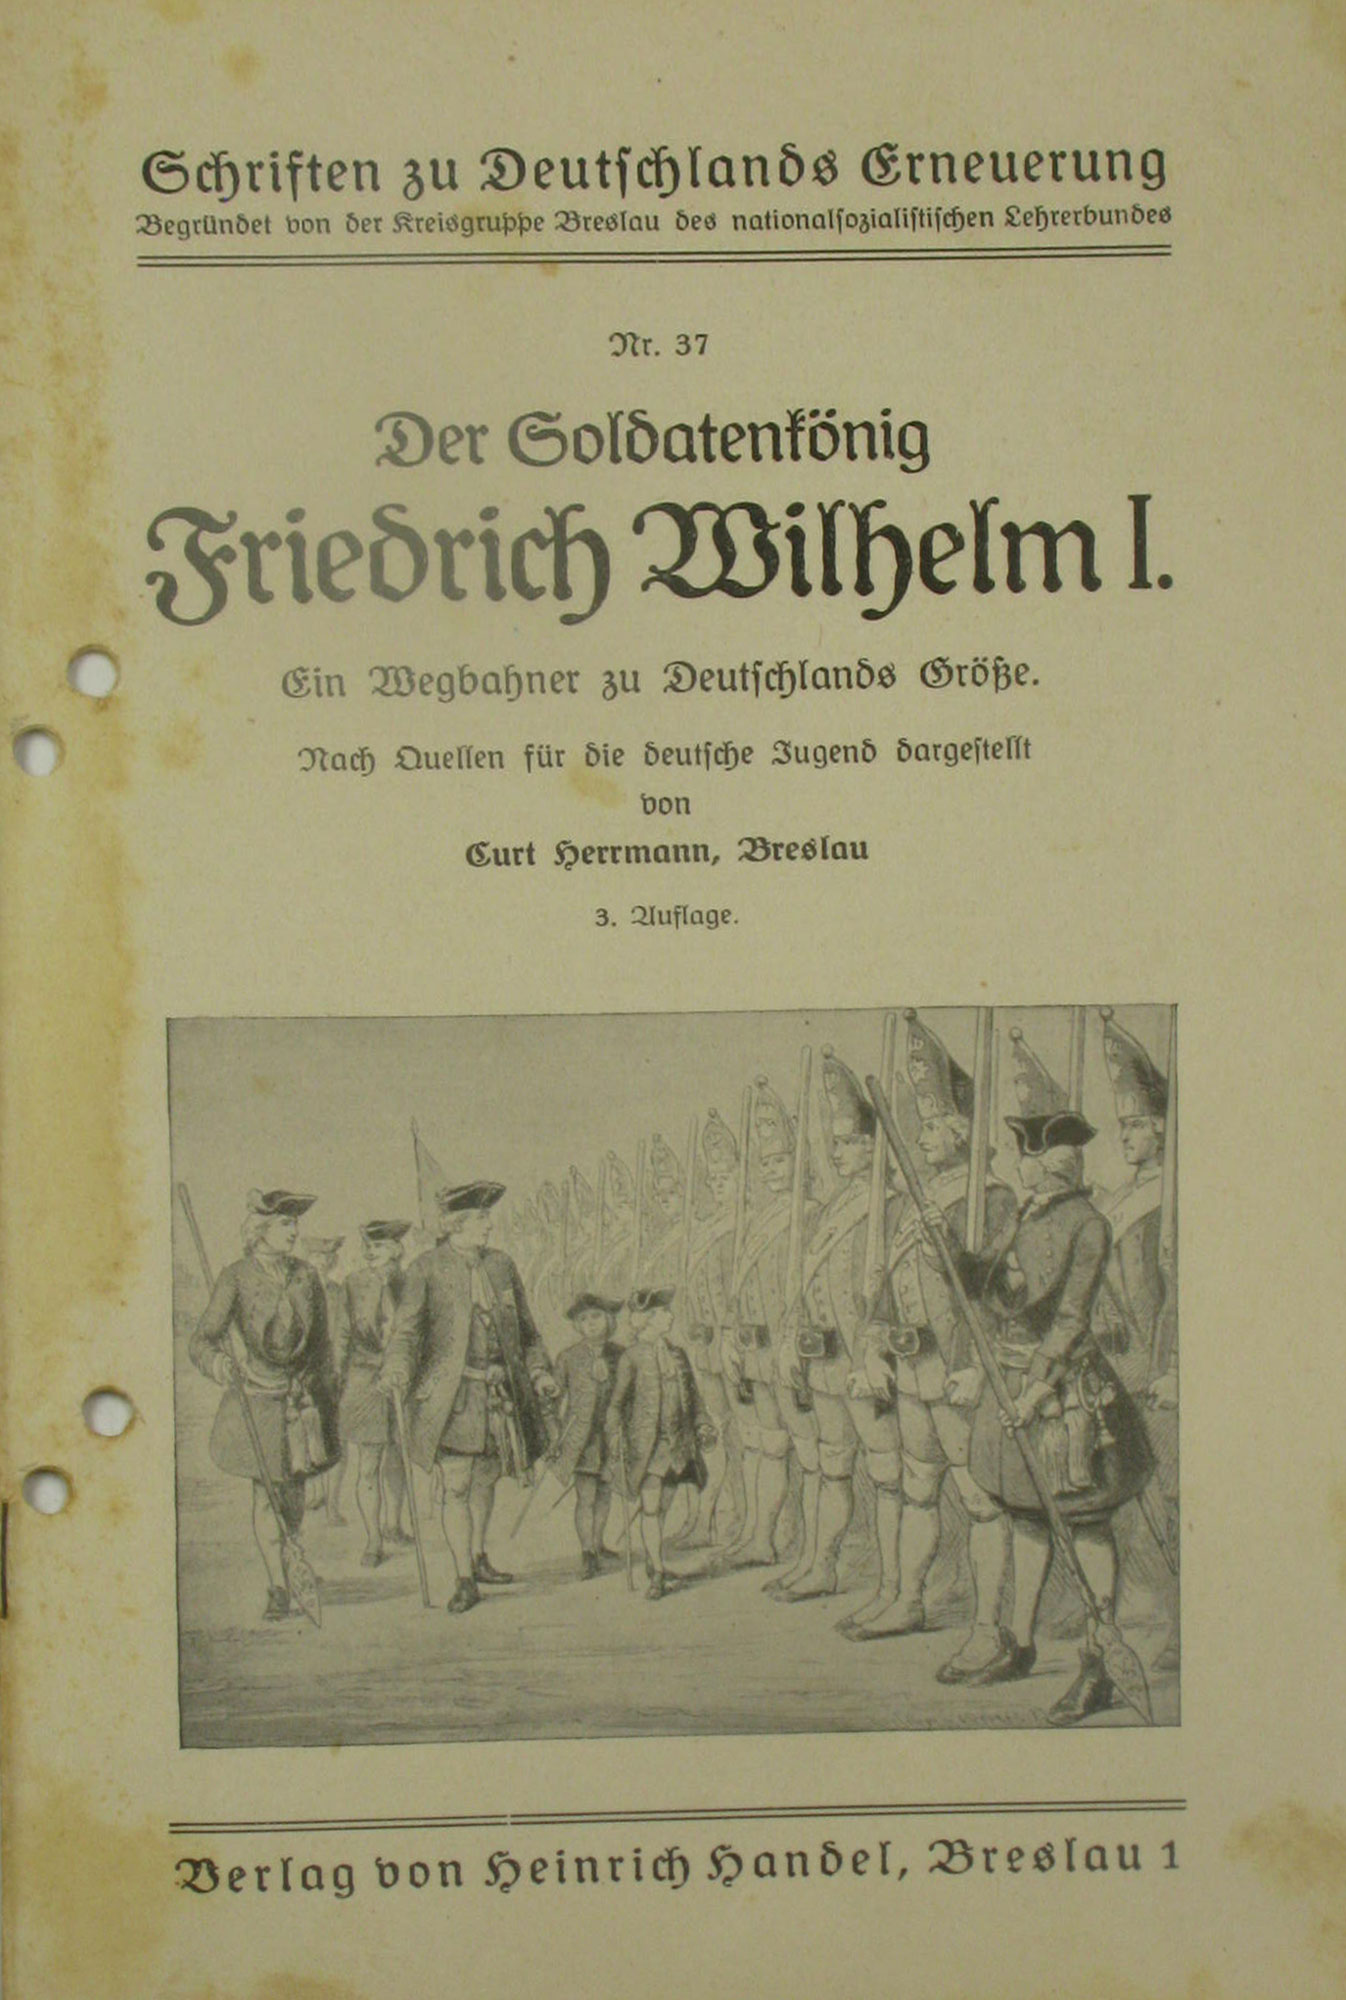 Herrmann, Curt:  Der Soldatenkönig Friedrich Wilhelm I. Ein Wegbahner zu Deutschlands Größe. Schriften zu Deutschlands Erneuerung Nr. 37. 